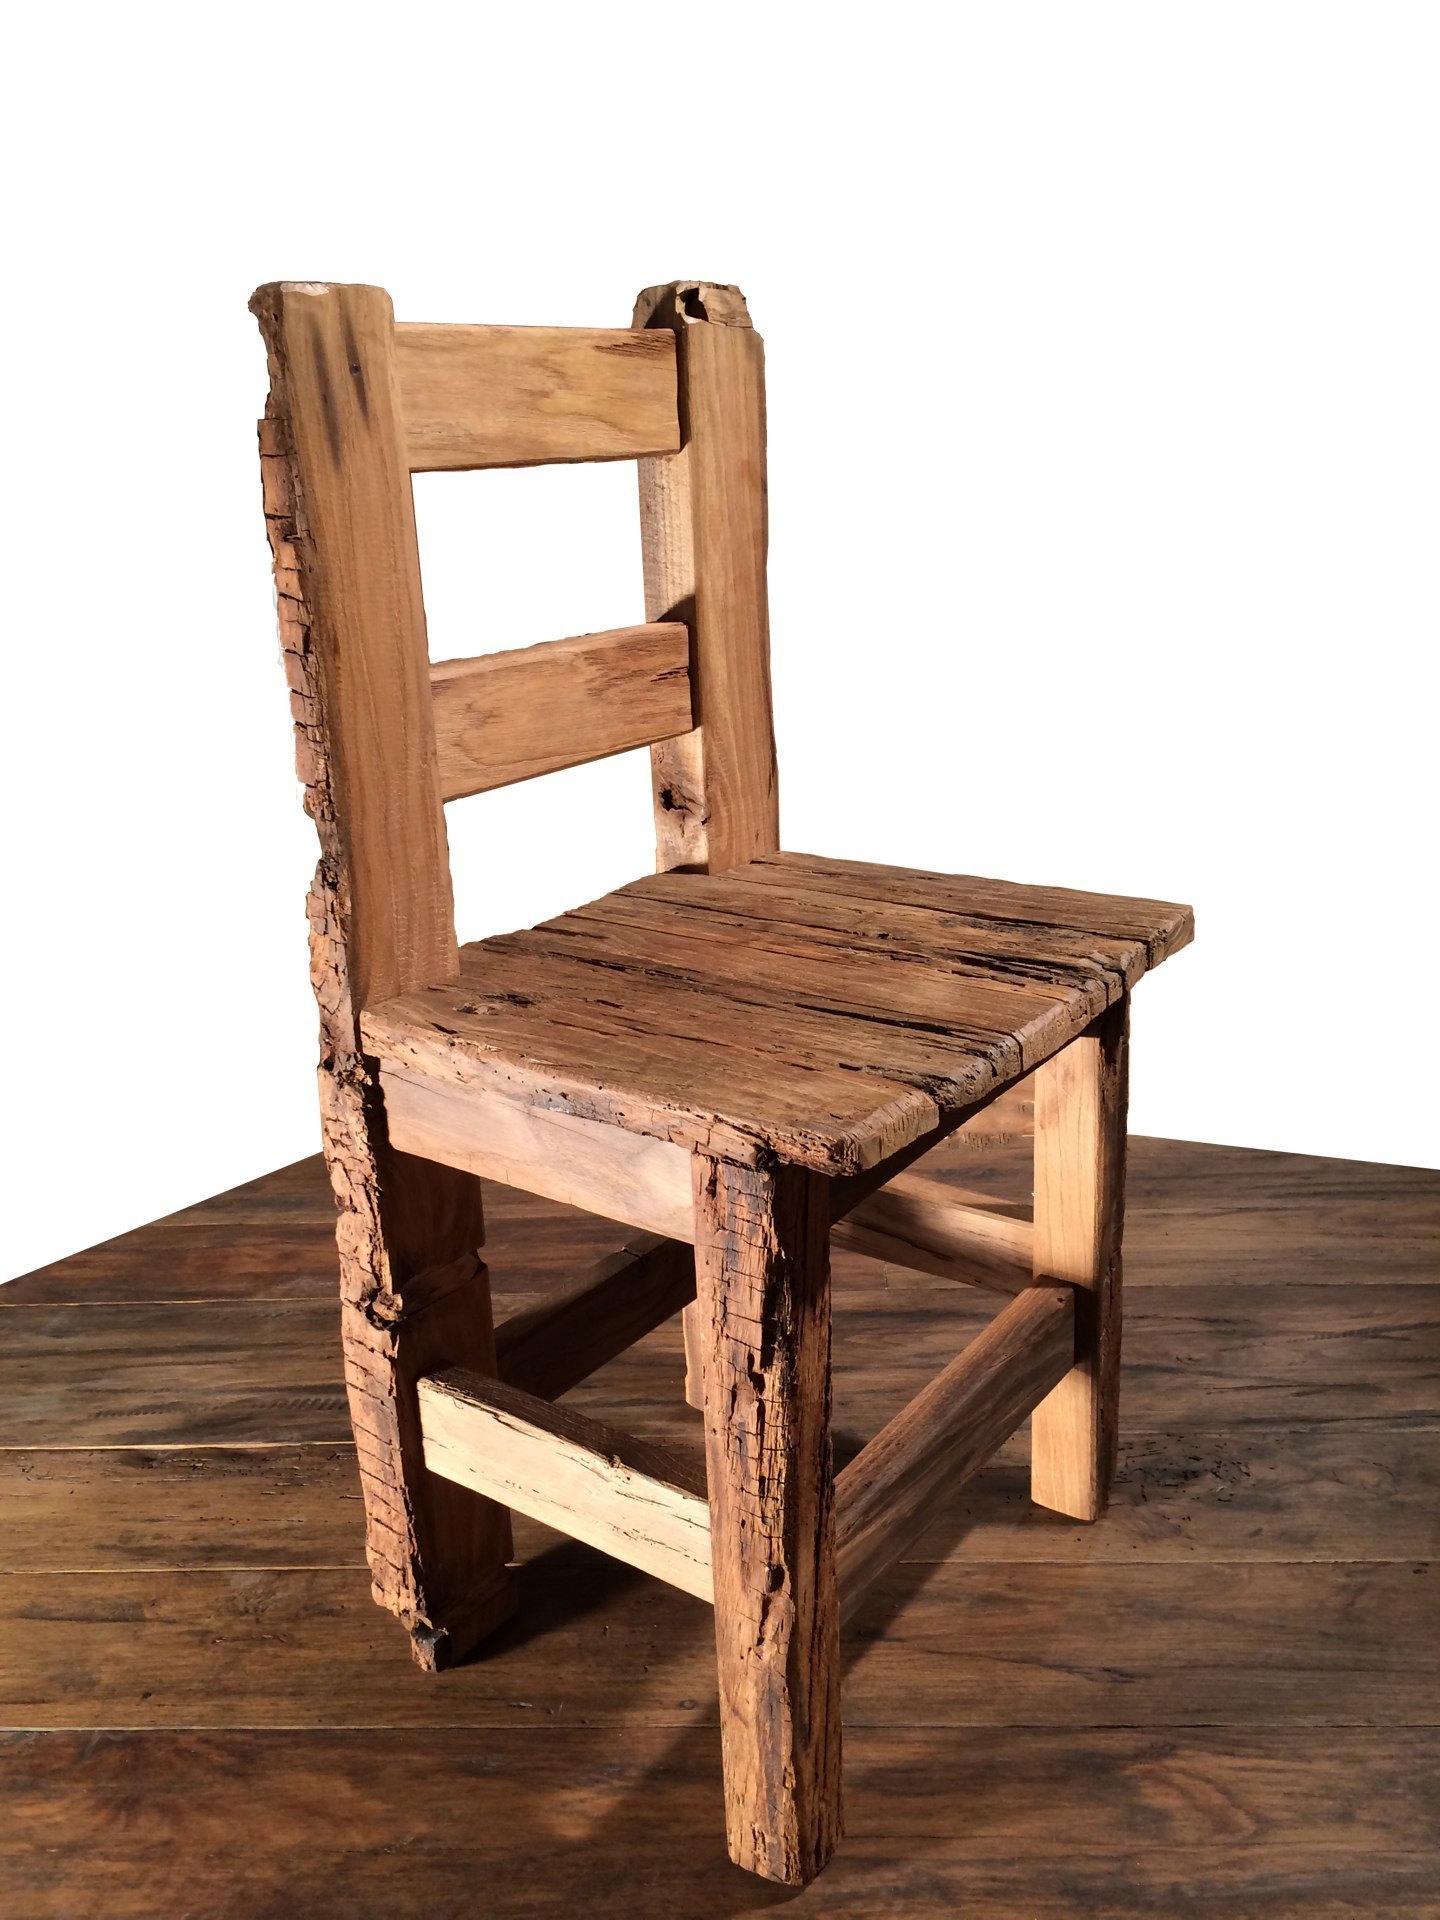 Tavoli sedie arredamenti porte vintage in legno antico ...